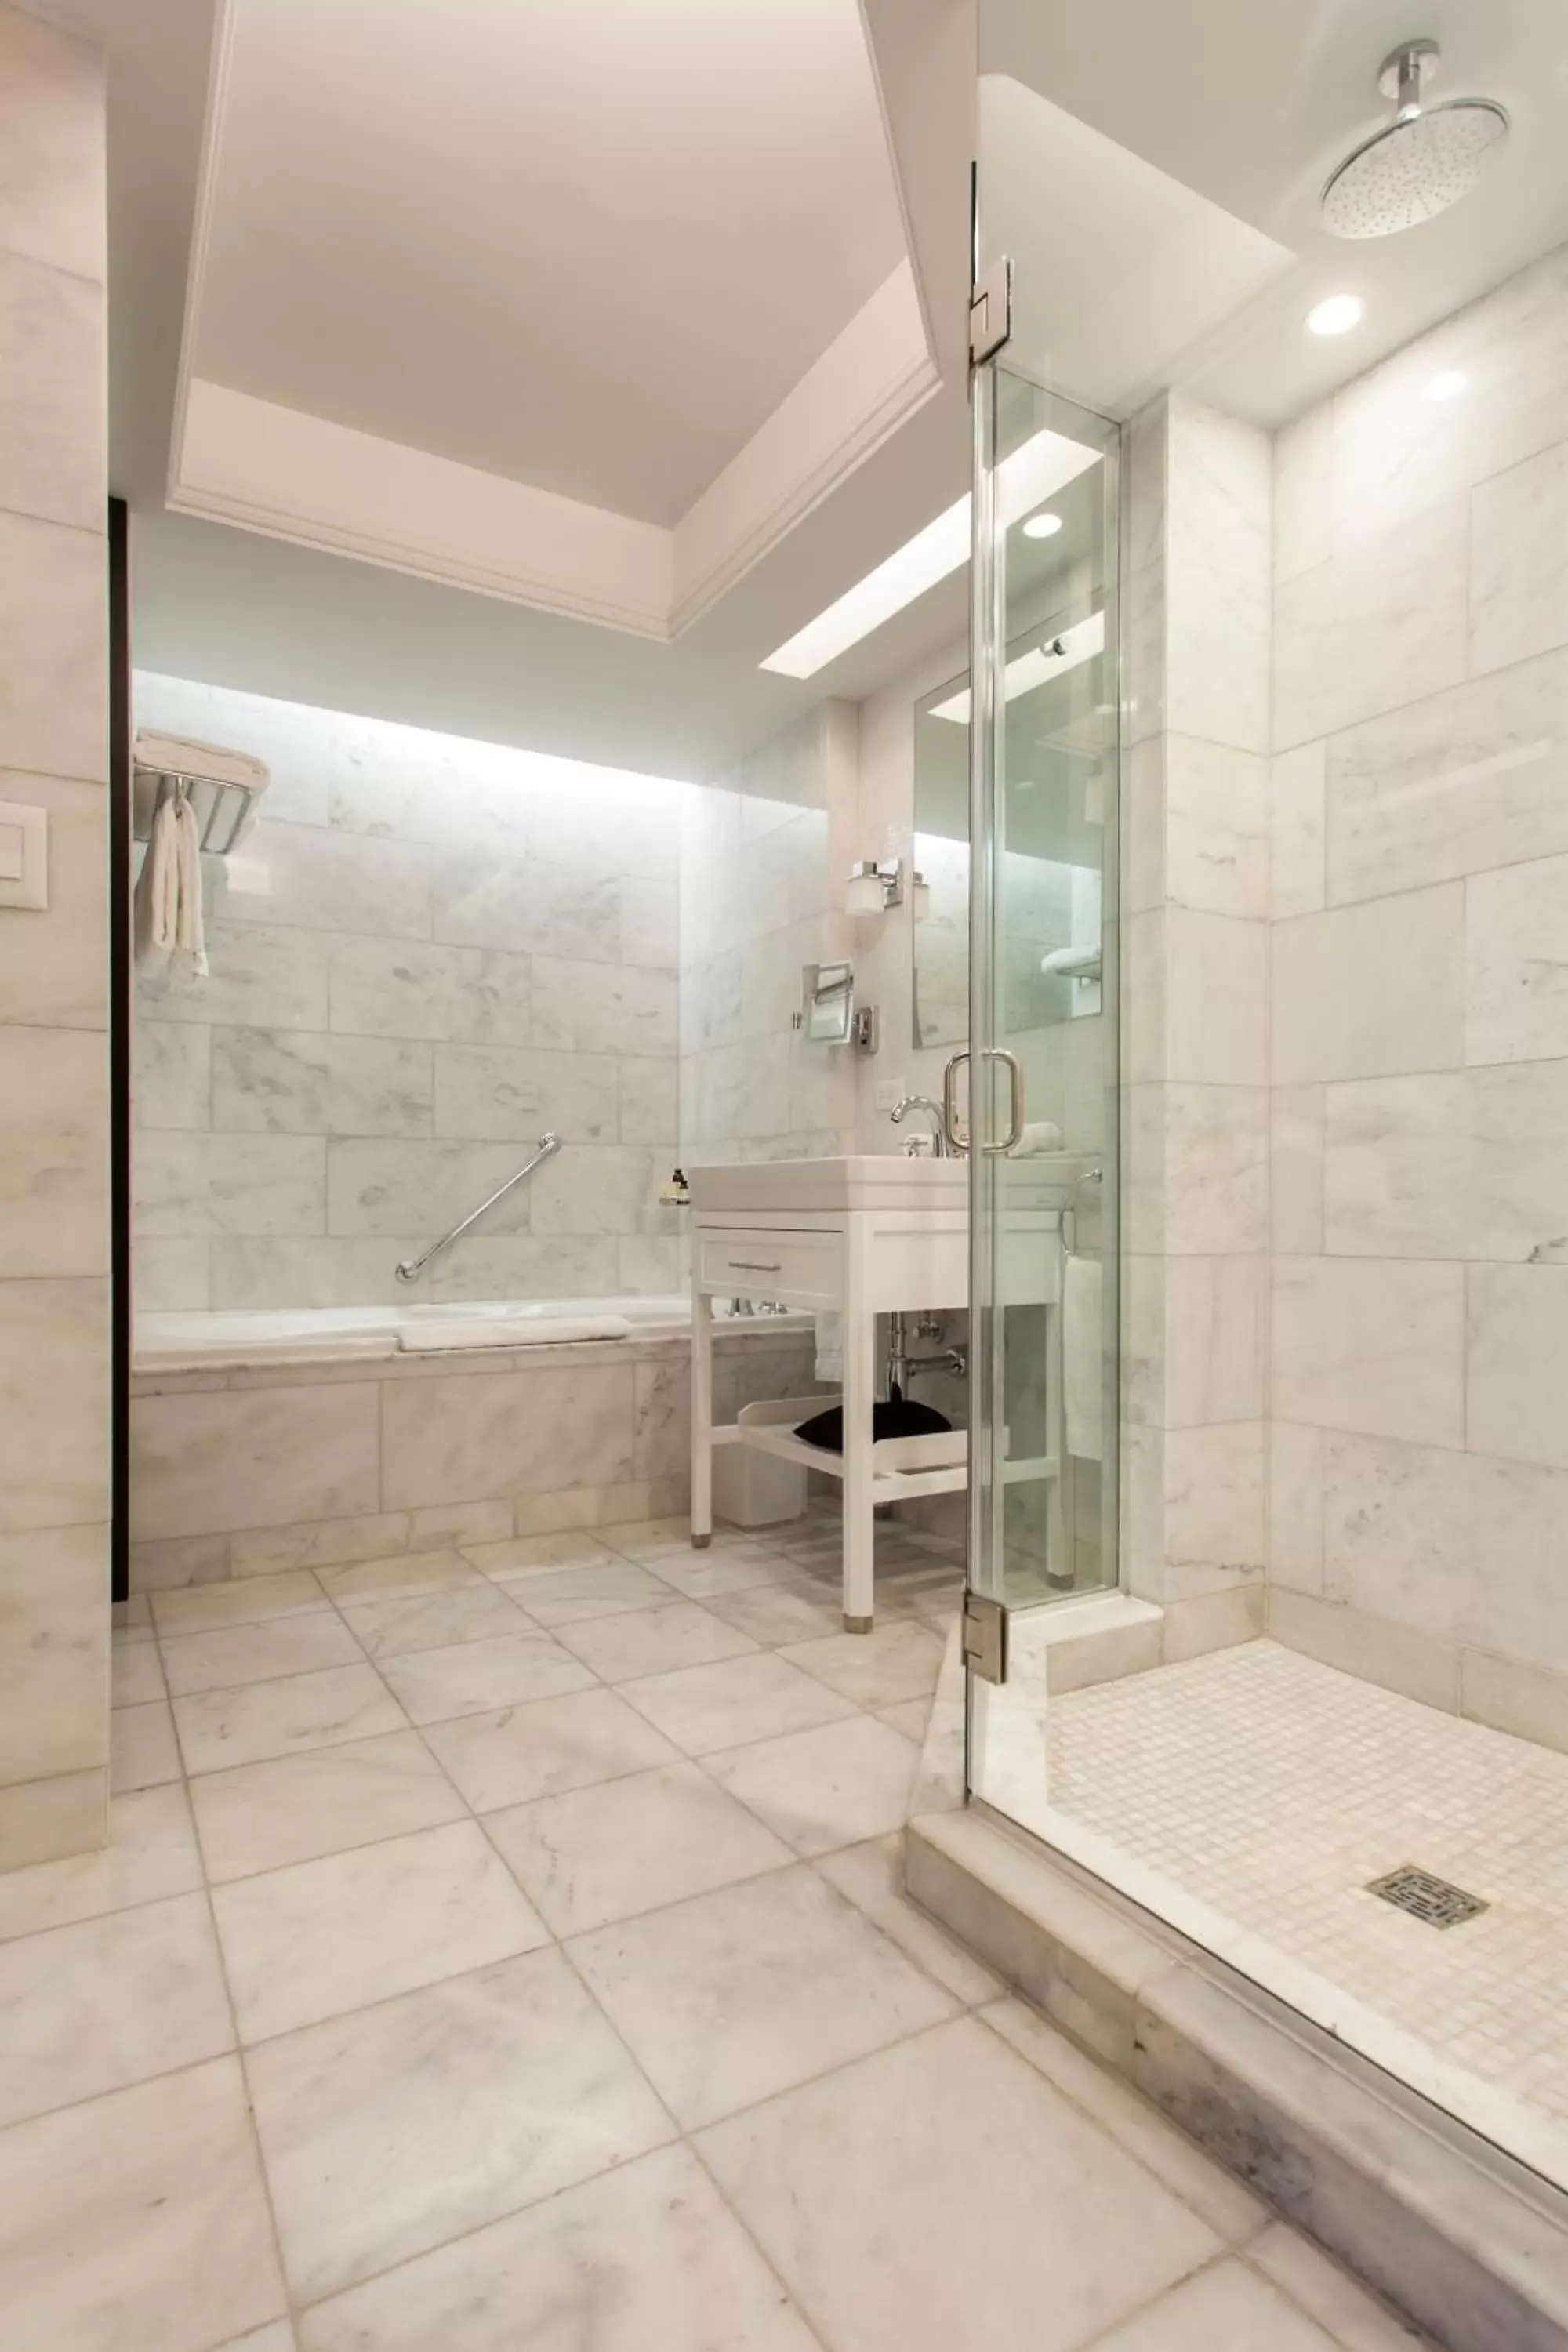 Bathroom in Condado Vanderbilt Hotel